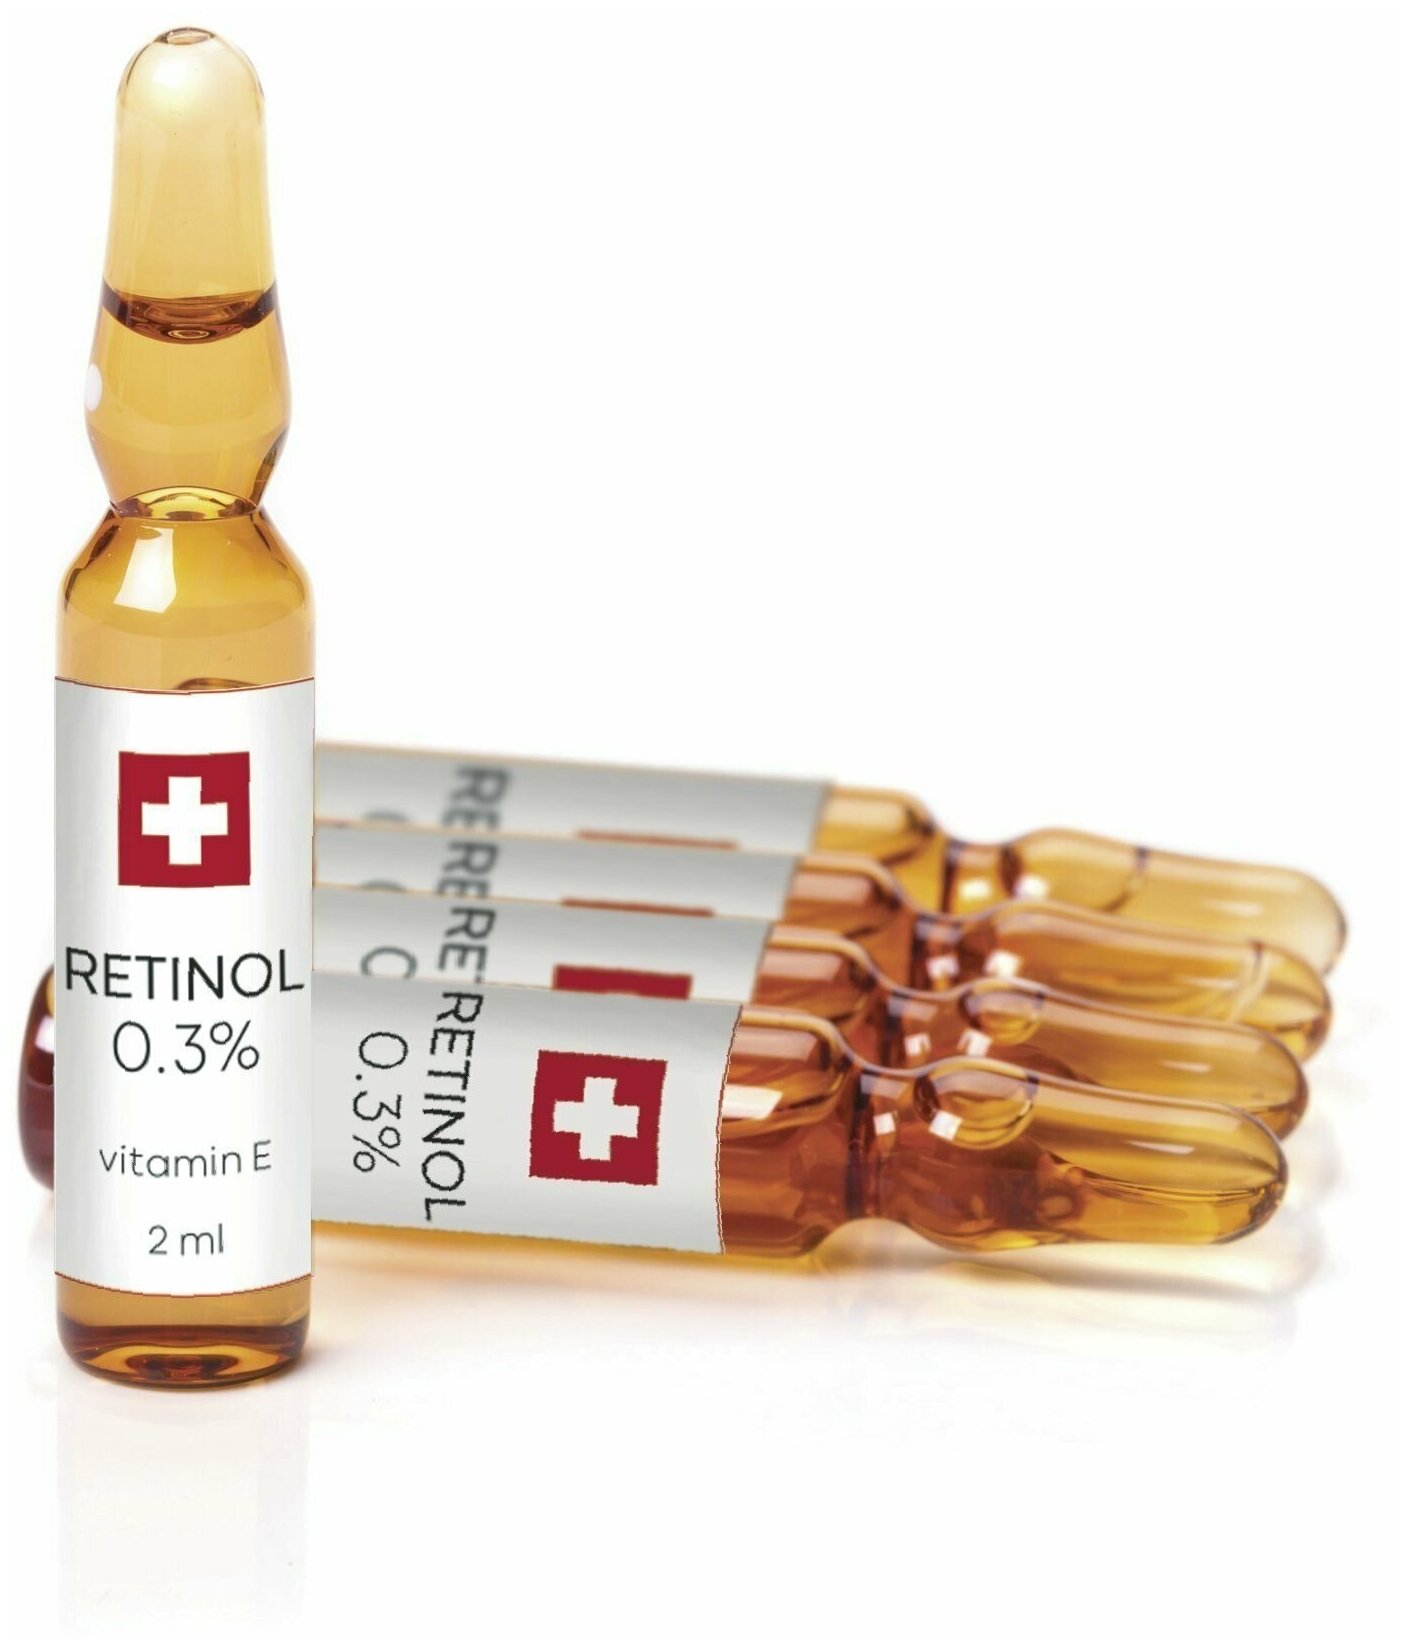 TETe Cosmeceutical Retinol Ampoule Активный ампульный концентрат для лица с инкапсулированным ретинолом 03% для омоложения кожи 10 мл